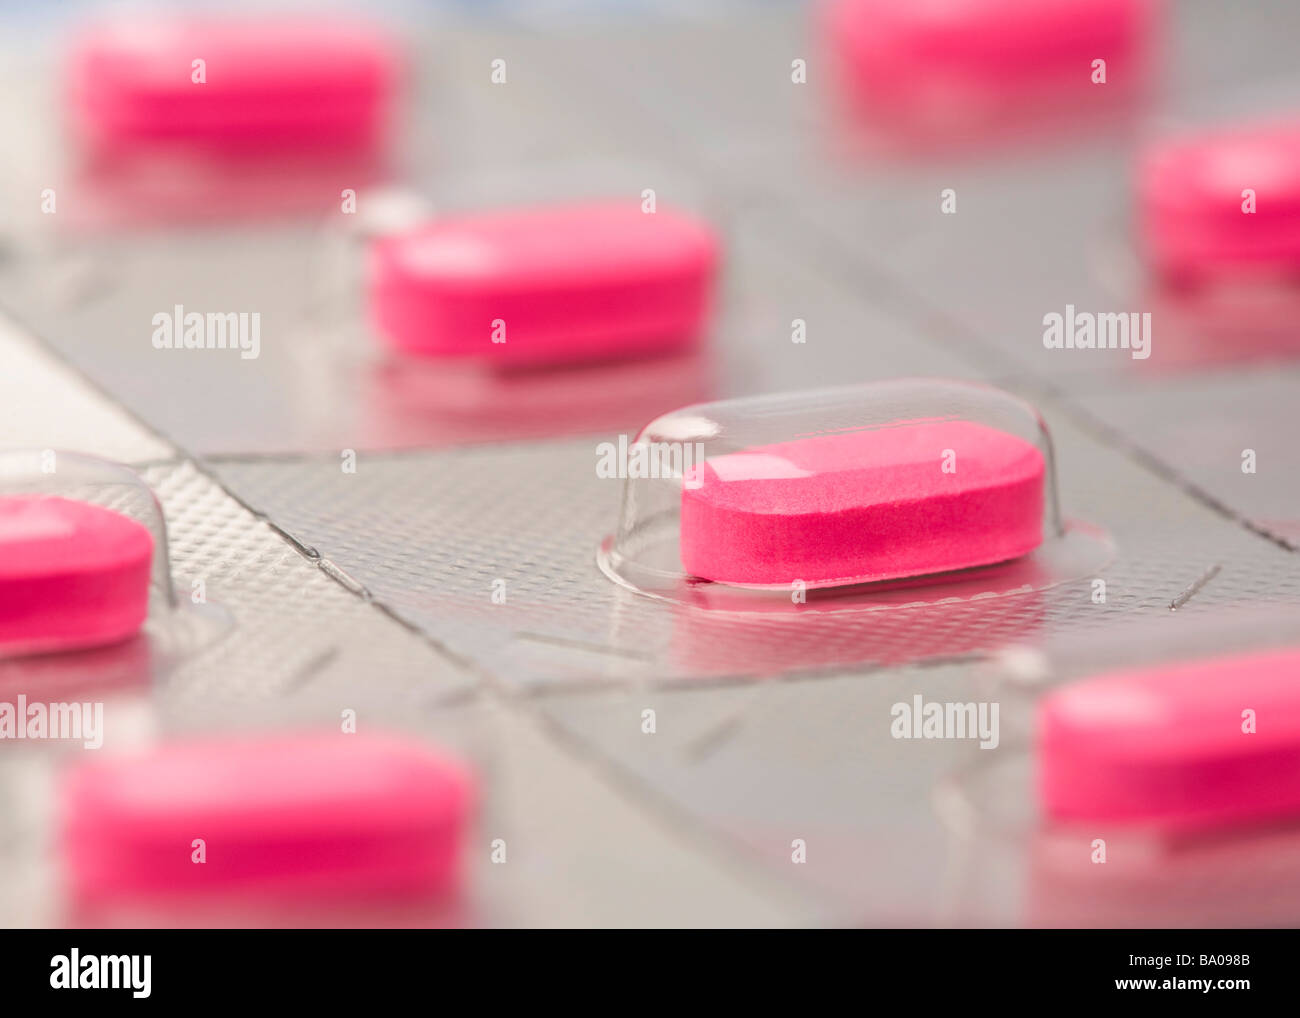 Les caplets emballés individuellement la médecine rose Banque D'Images